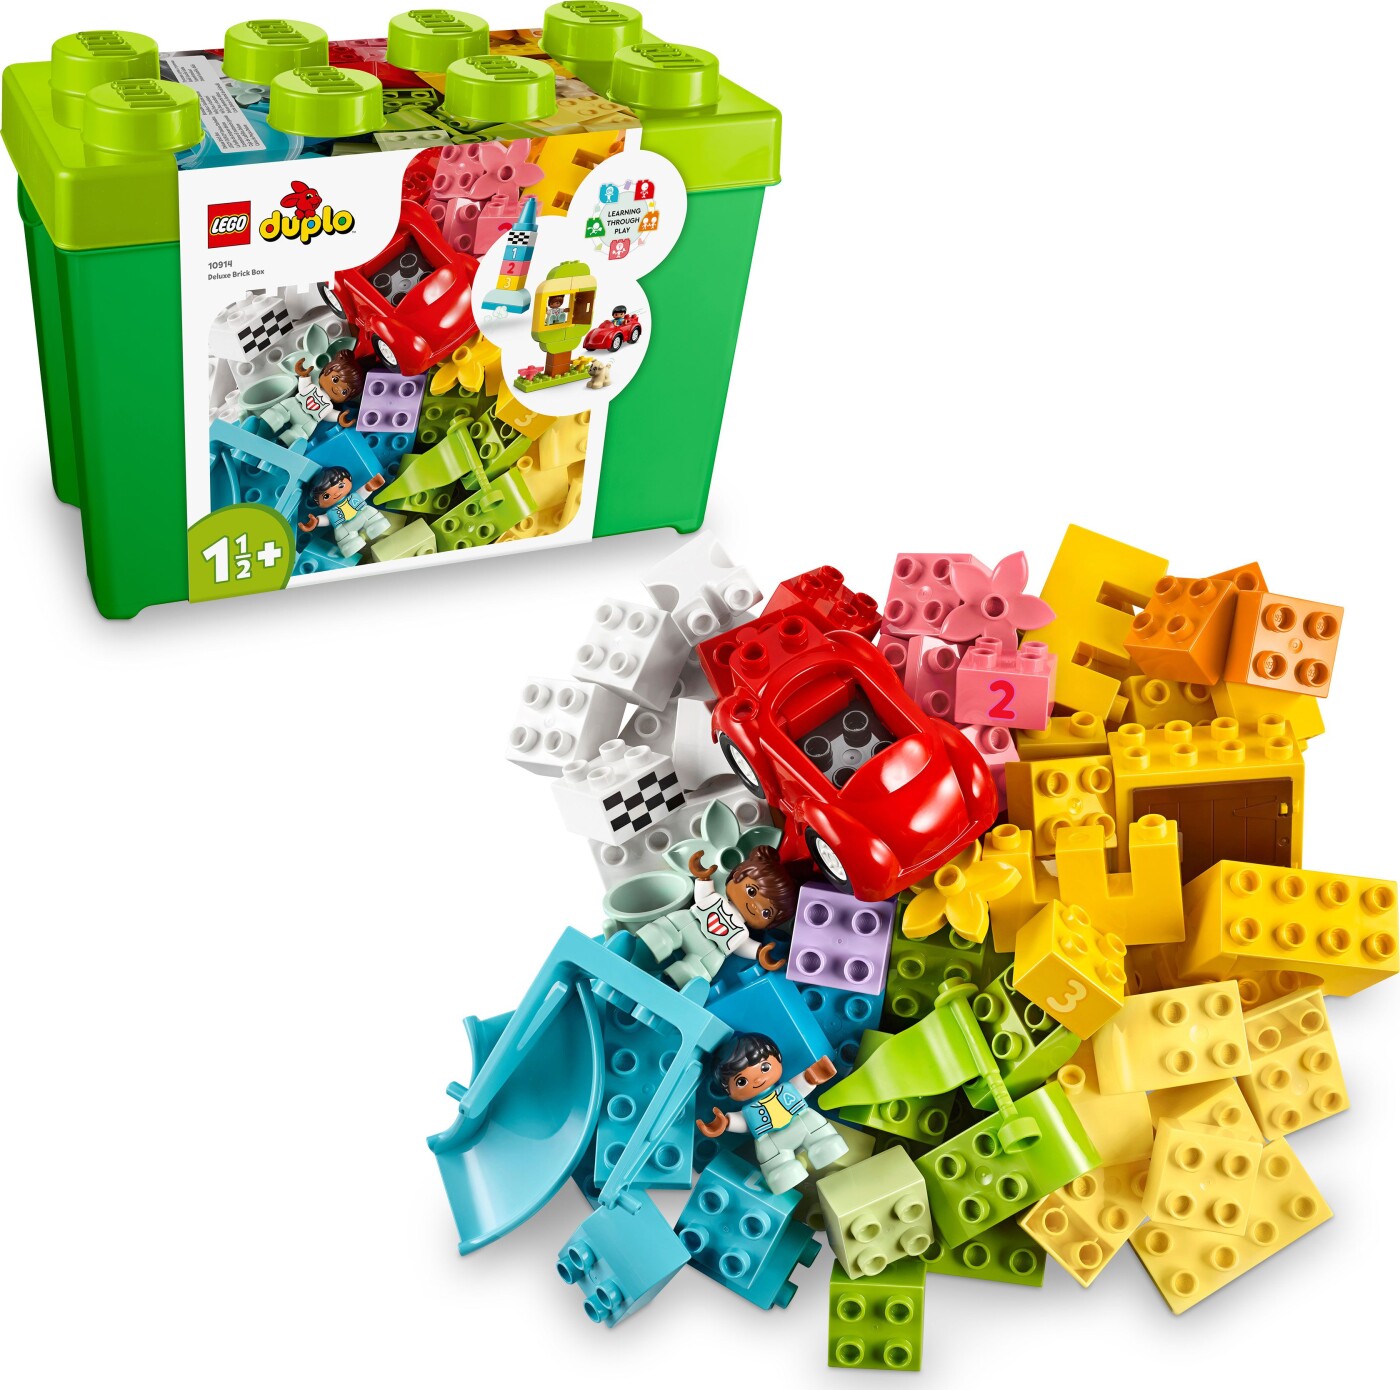 Billede af Lego Duplo - Luksuskasse Med Klodser - 10914 hos Gucca.dk